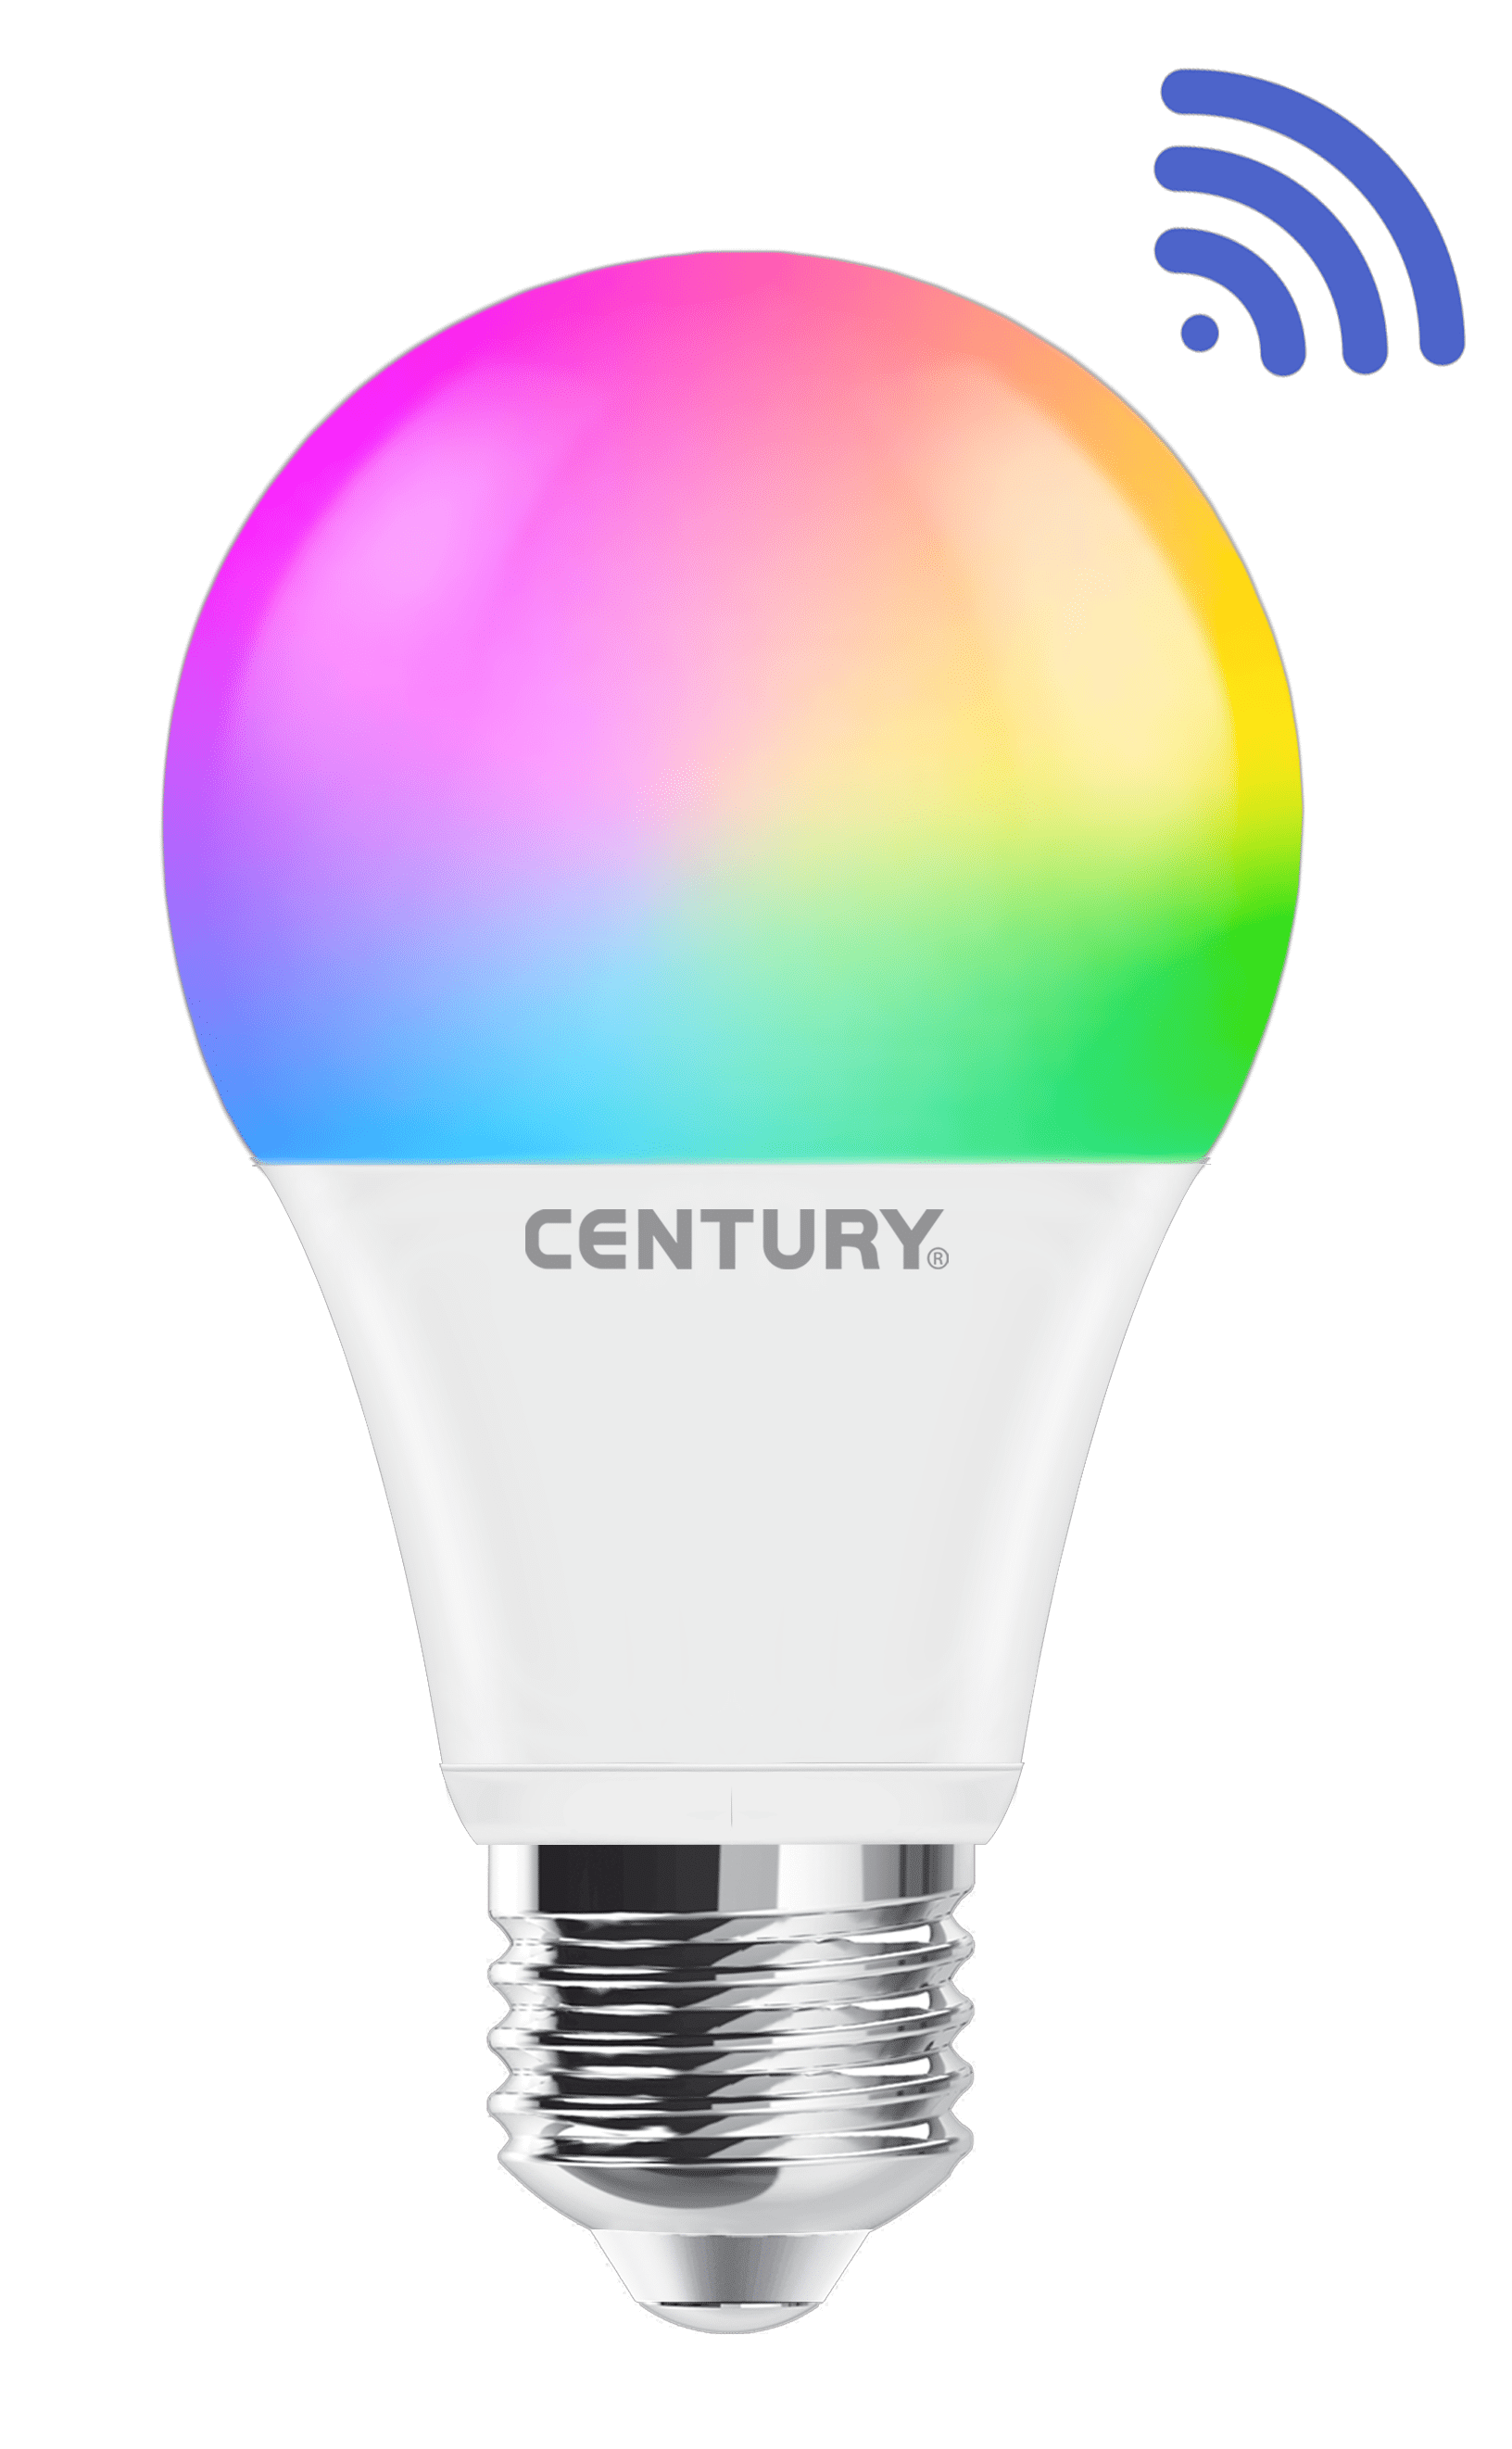 Aria Smart Lampada Led RGB WI-FI